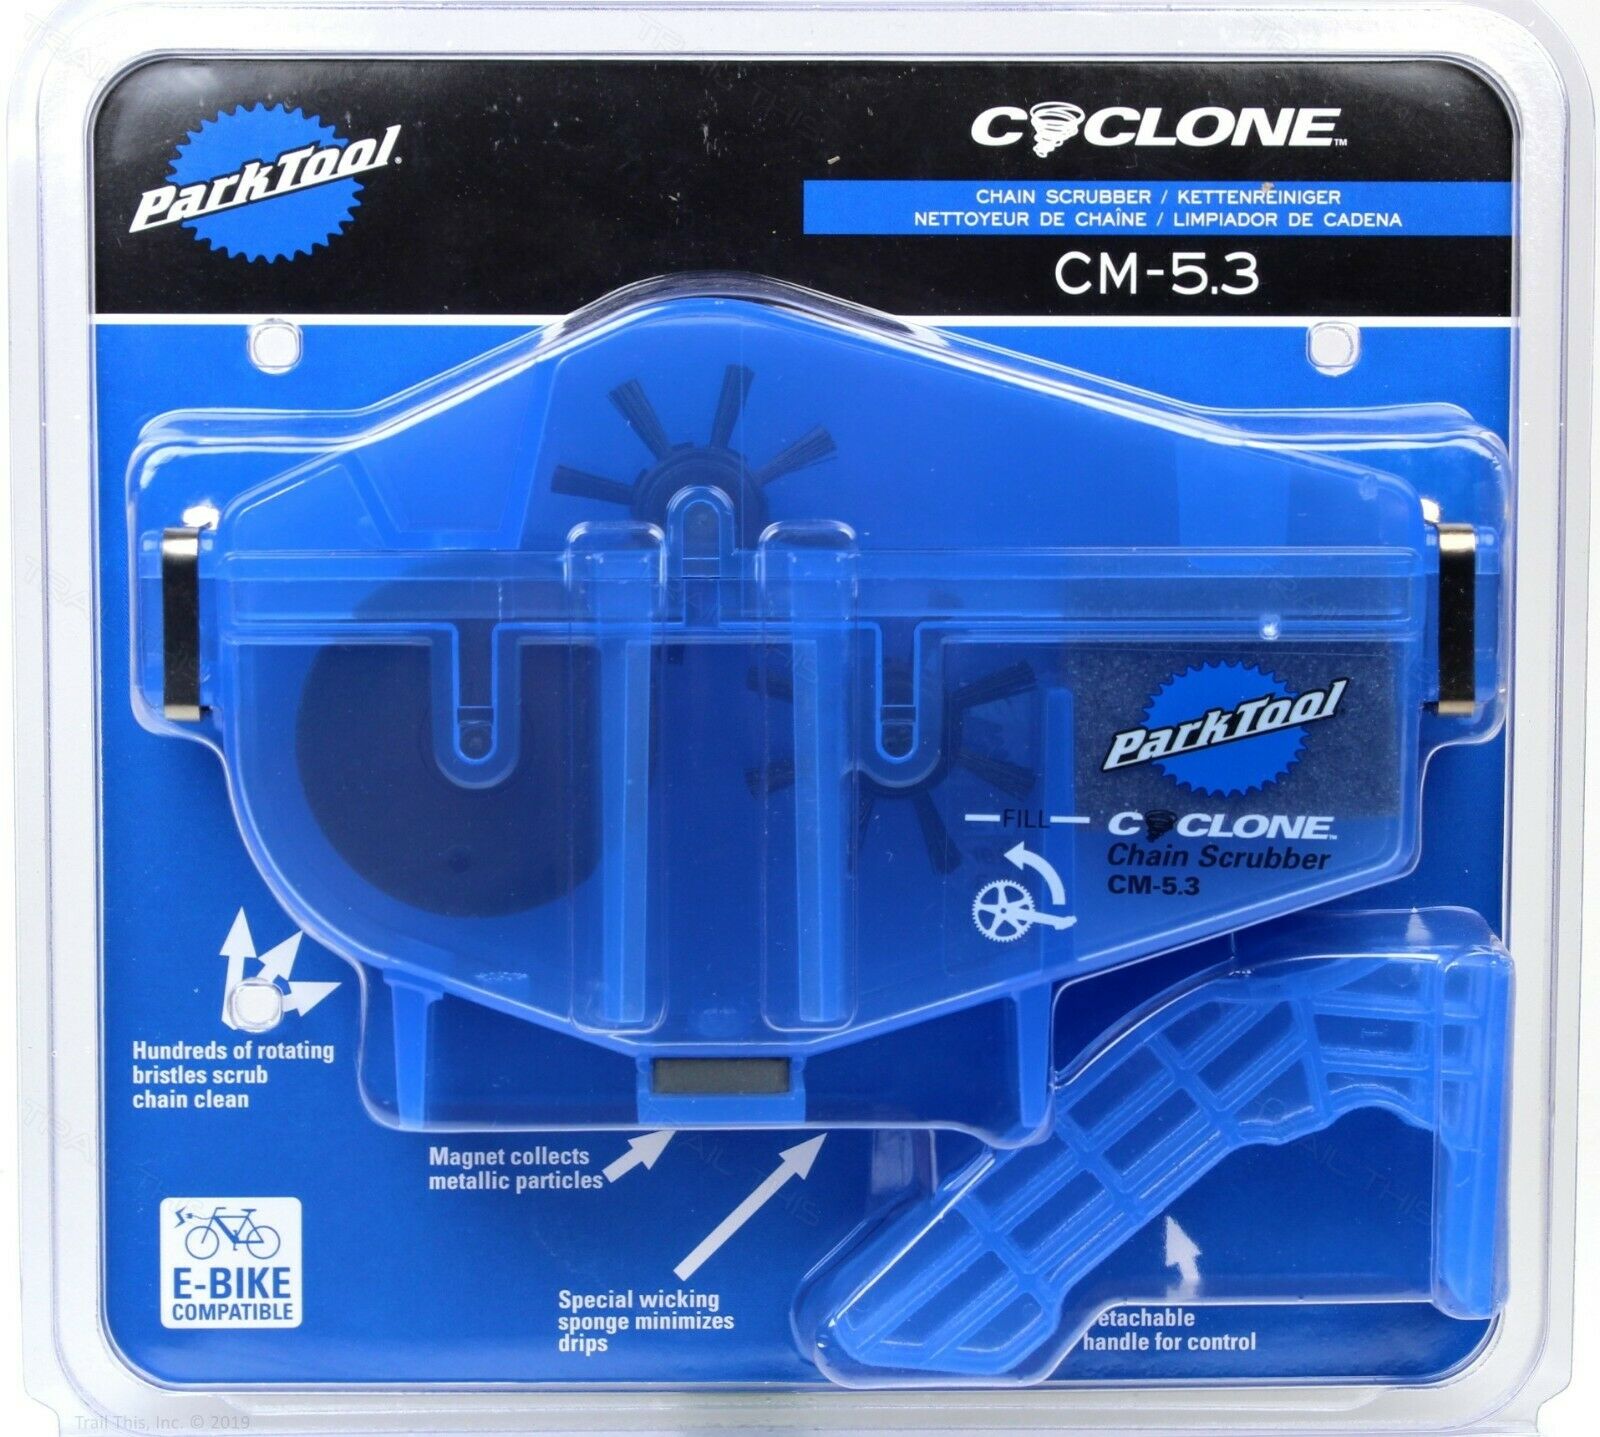 Park Tool Cm-5.3 Cyclone Chain Scrubber Cleaner Machine For Road Mtb Ebike Bike